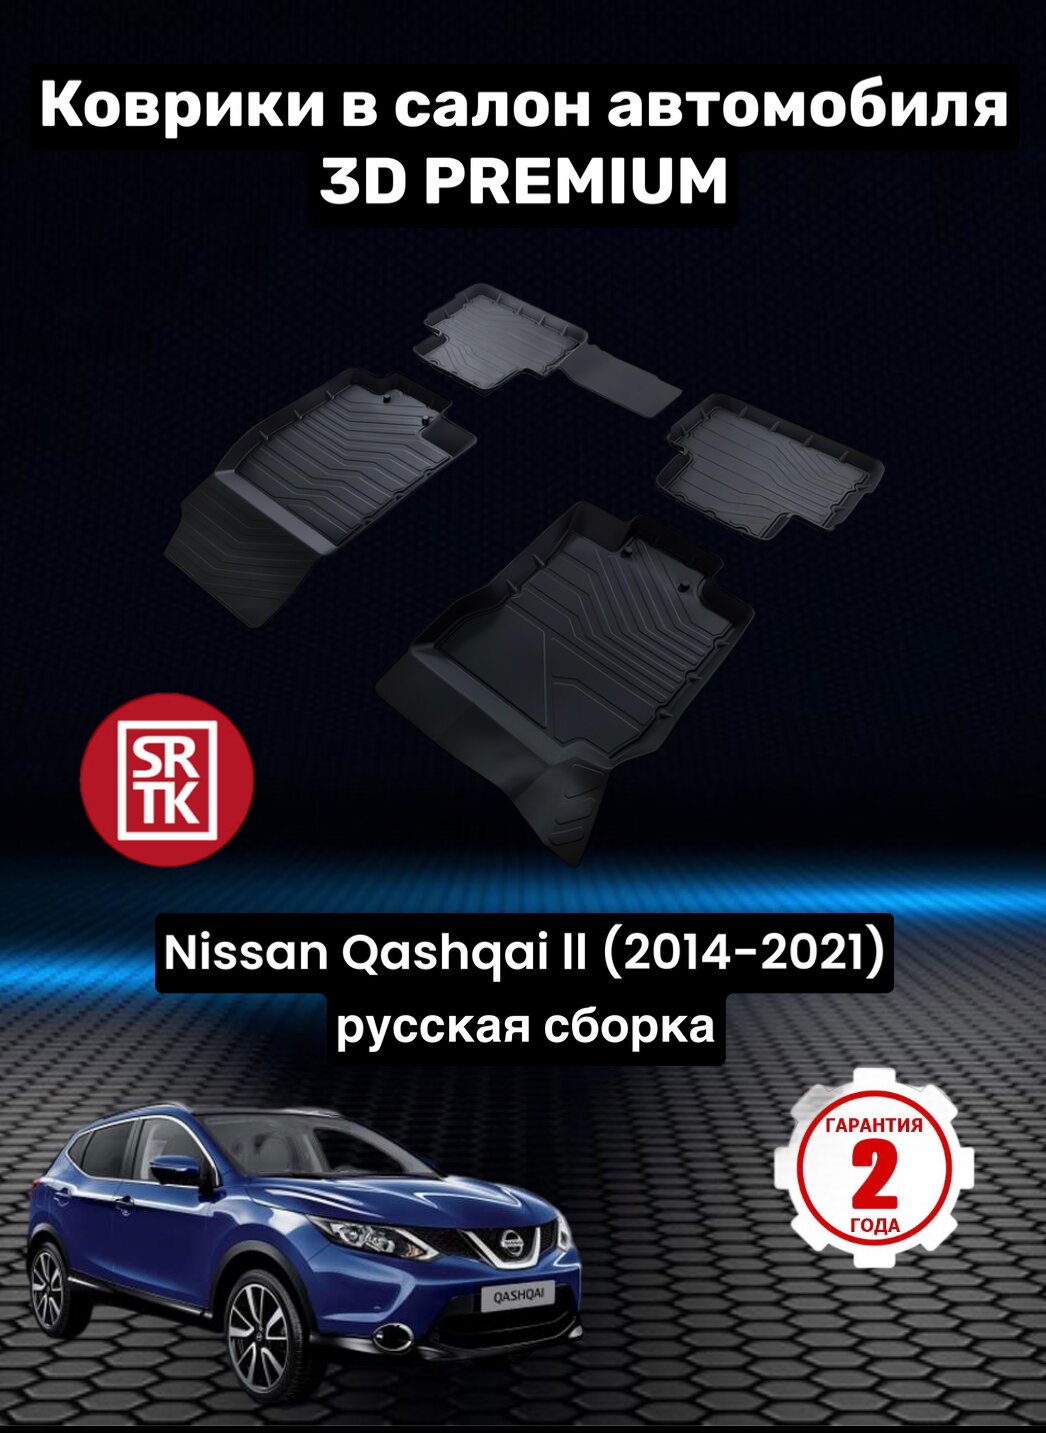 Коврики резиновые в салон для Ниссан Кашкай 2 / Nissan Qashqai II RUS (2014-2021) 3D PREMIUM SRTK (Саранск) комплект в салон